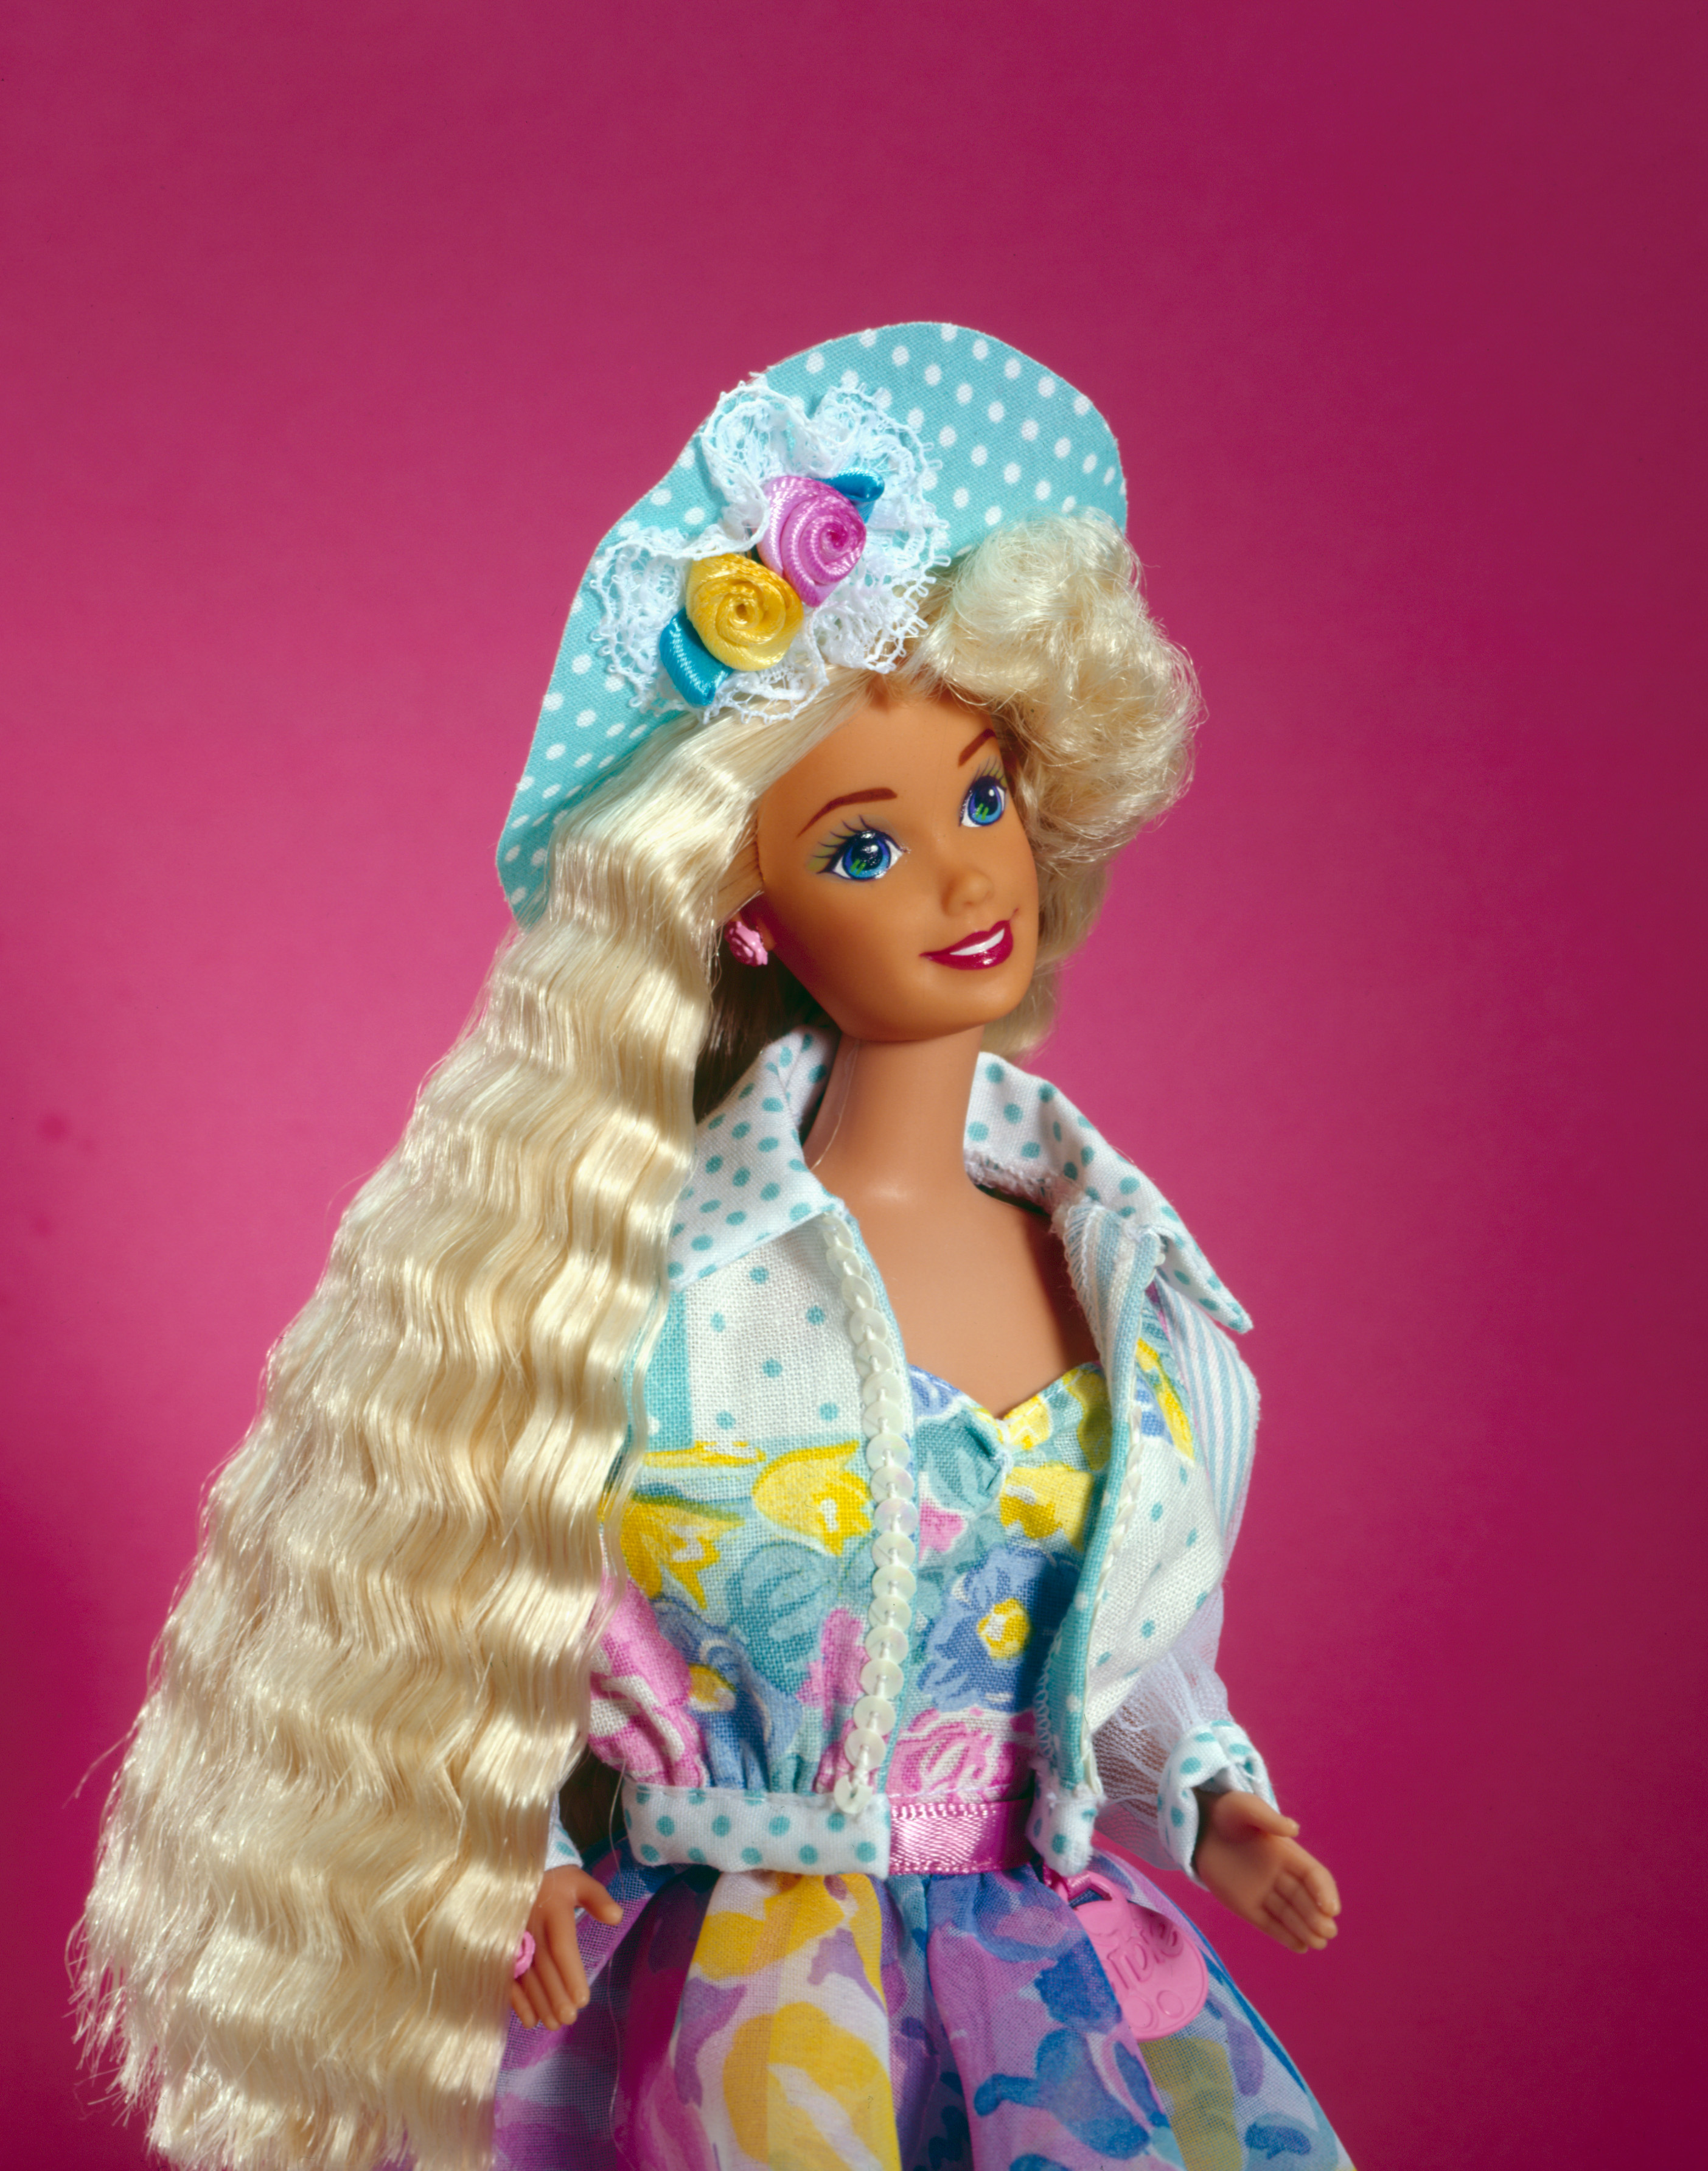 Los juguetes descatalogados de Mattel que aparecen en 'Barbie': la muñeca  prohibida por el FBI o Ken 'sugar daddy', Estilo de vida